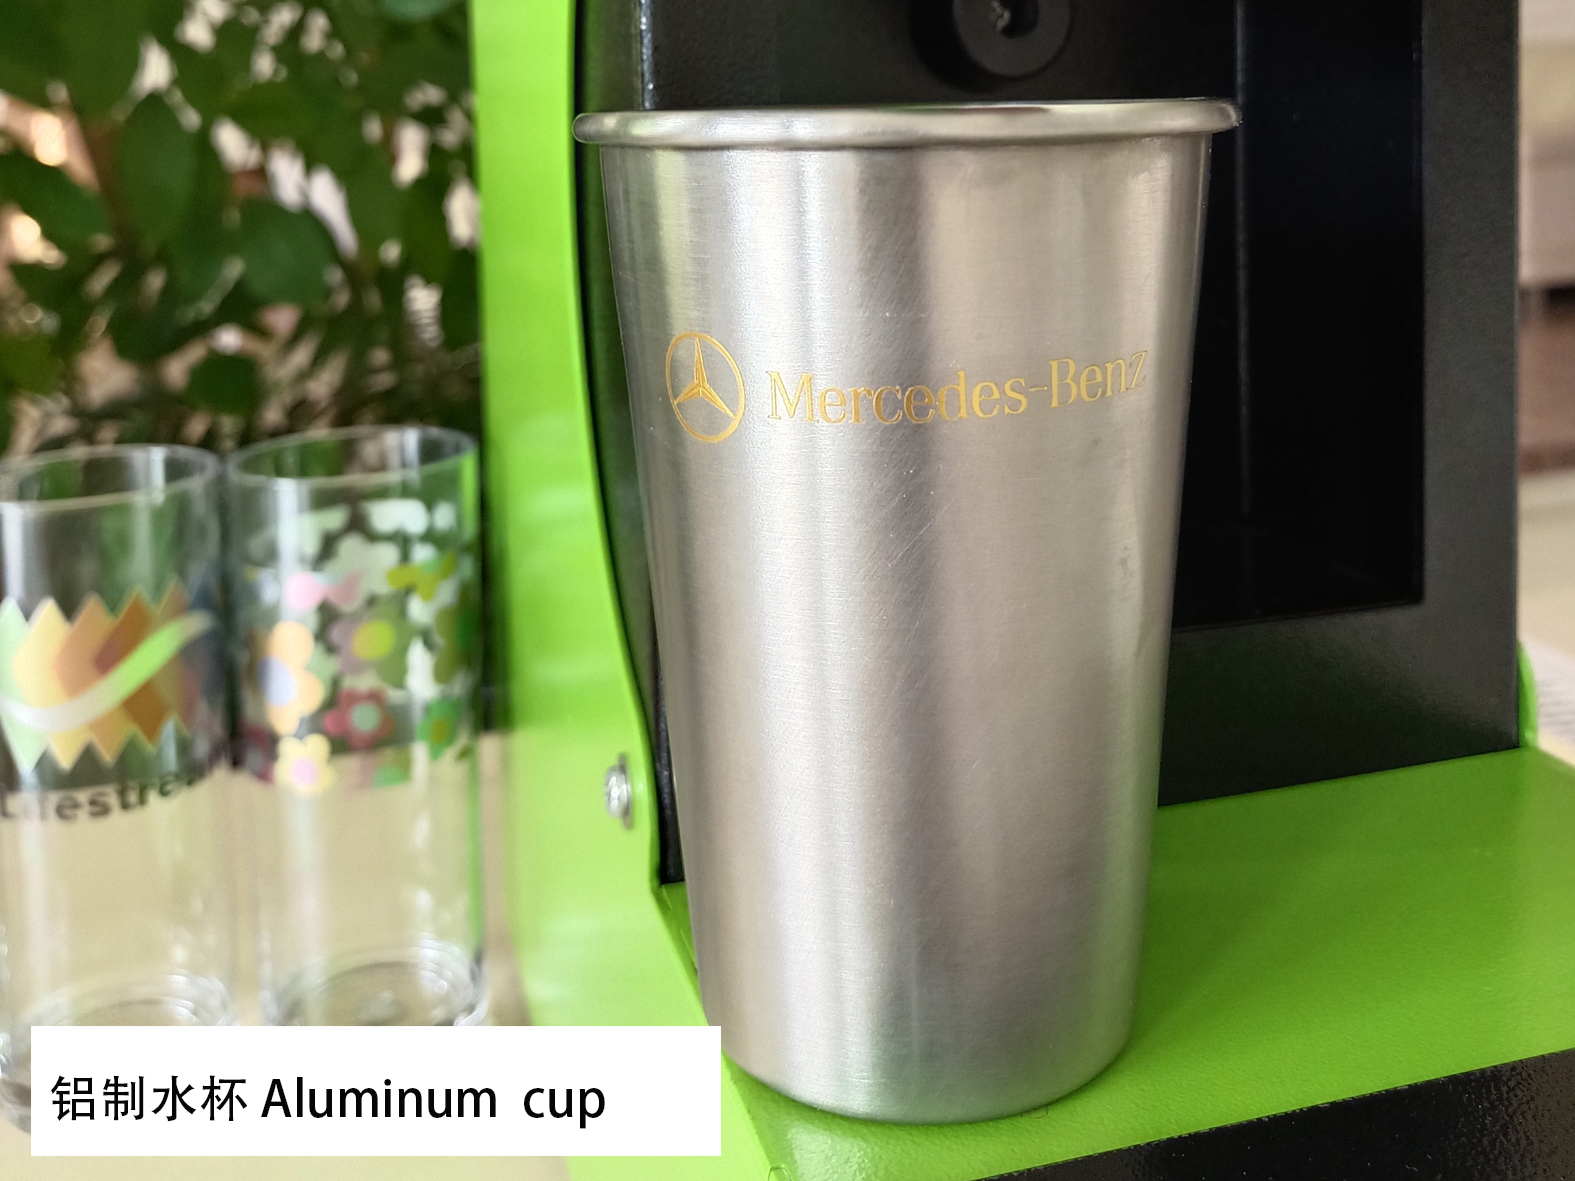 Eksklusibo nga mga Label, Logo, Mga Brand nga adunay Bright Gold Heat Transfer Decals Foil (HSF-GD811) para sa Aluminum Cups